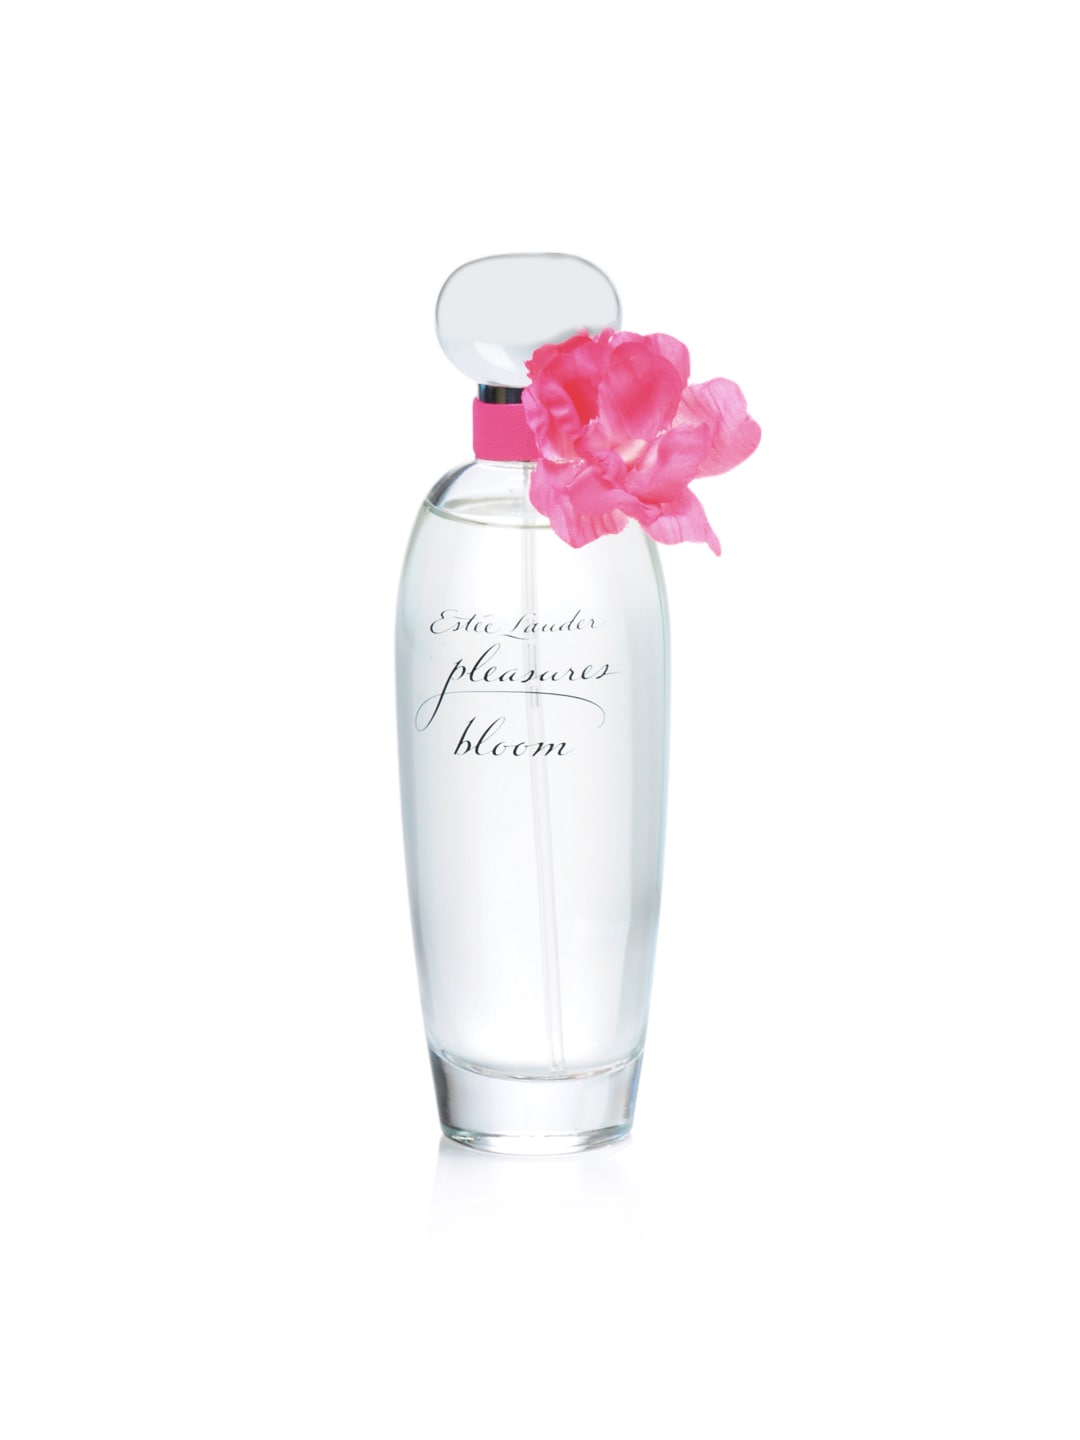 Estee Lauder Women Pleasures Bloom 100 ml Perfume